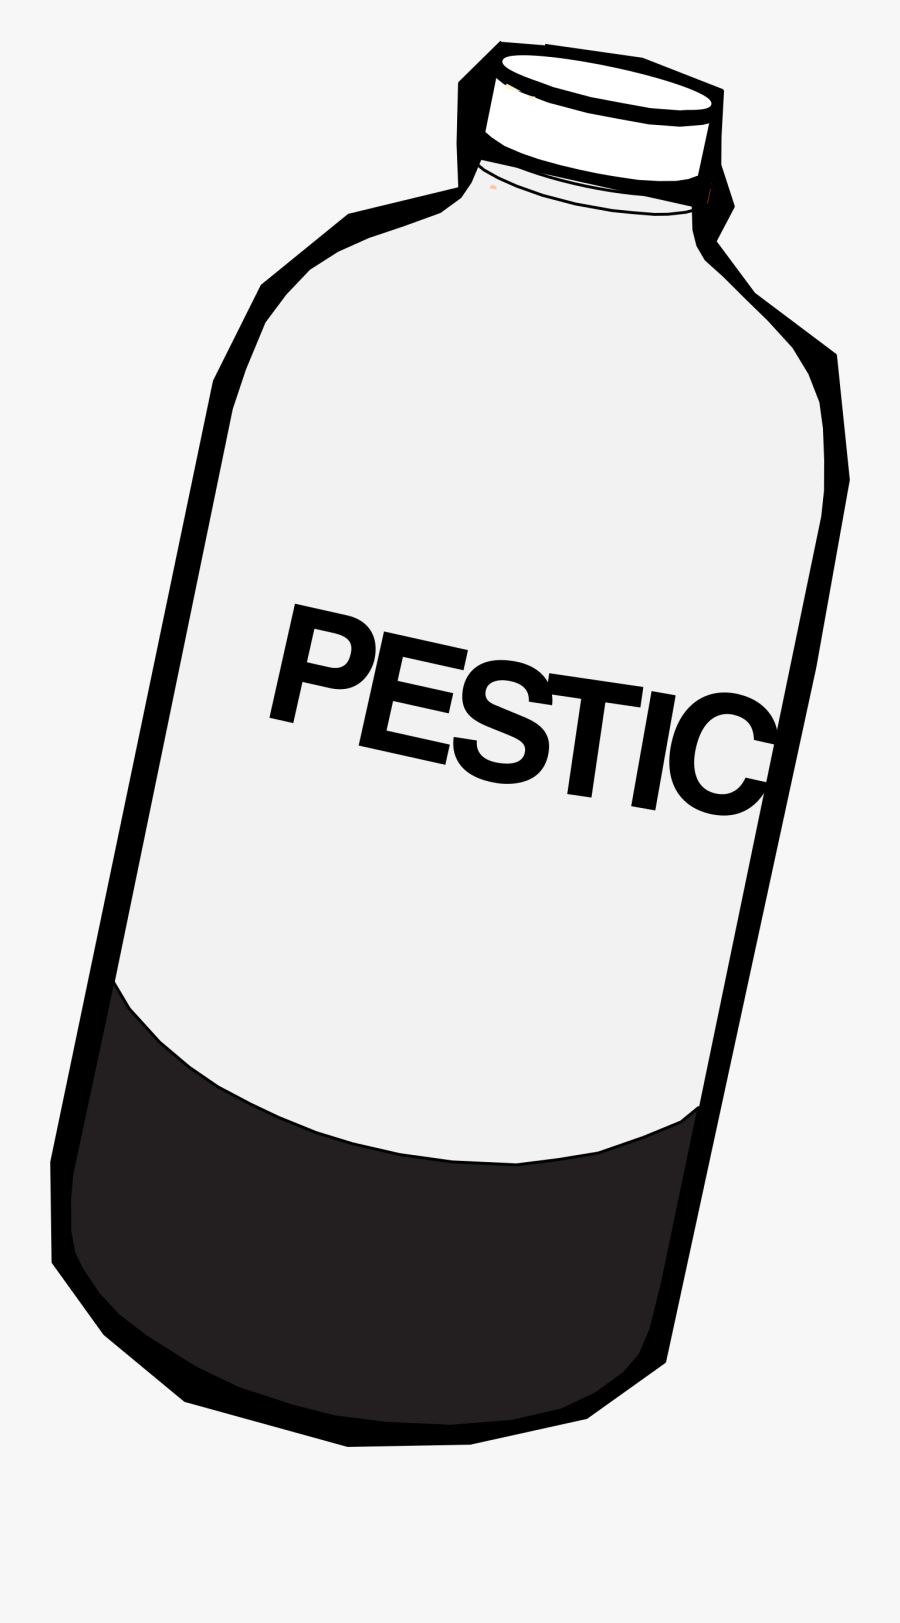 Pesticide Bottle Clip Art - Pesticide Clipart Black And White, Transparent Clipart